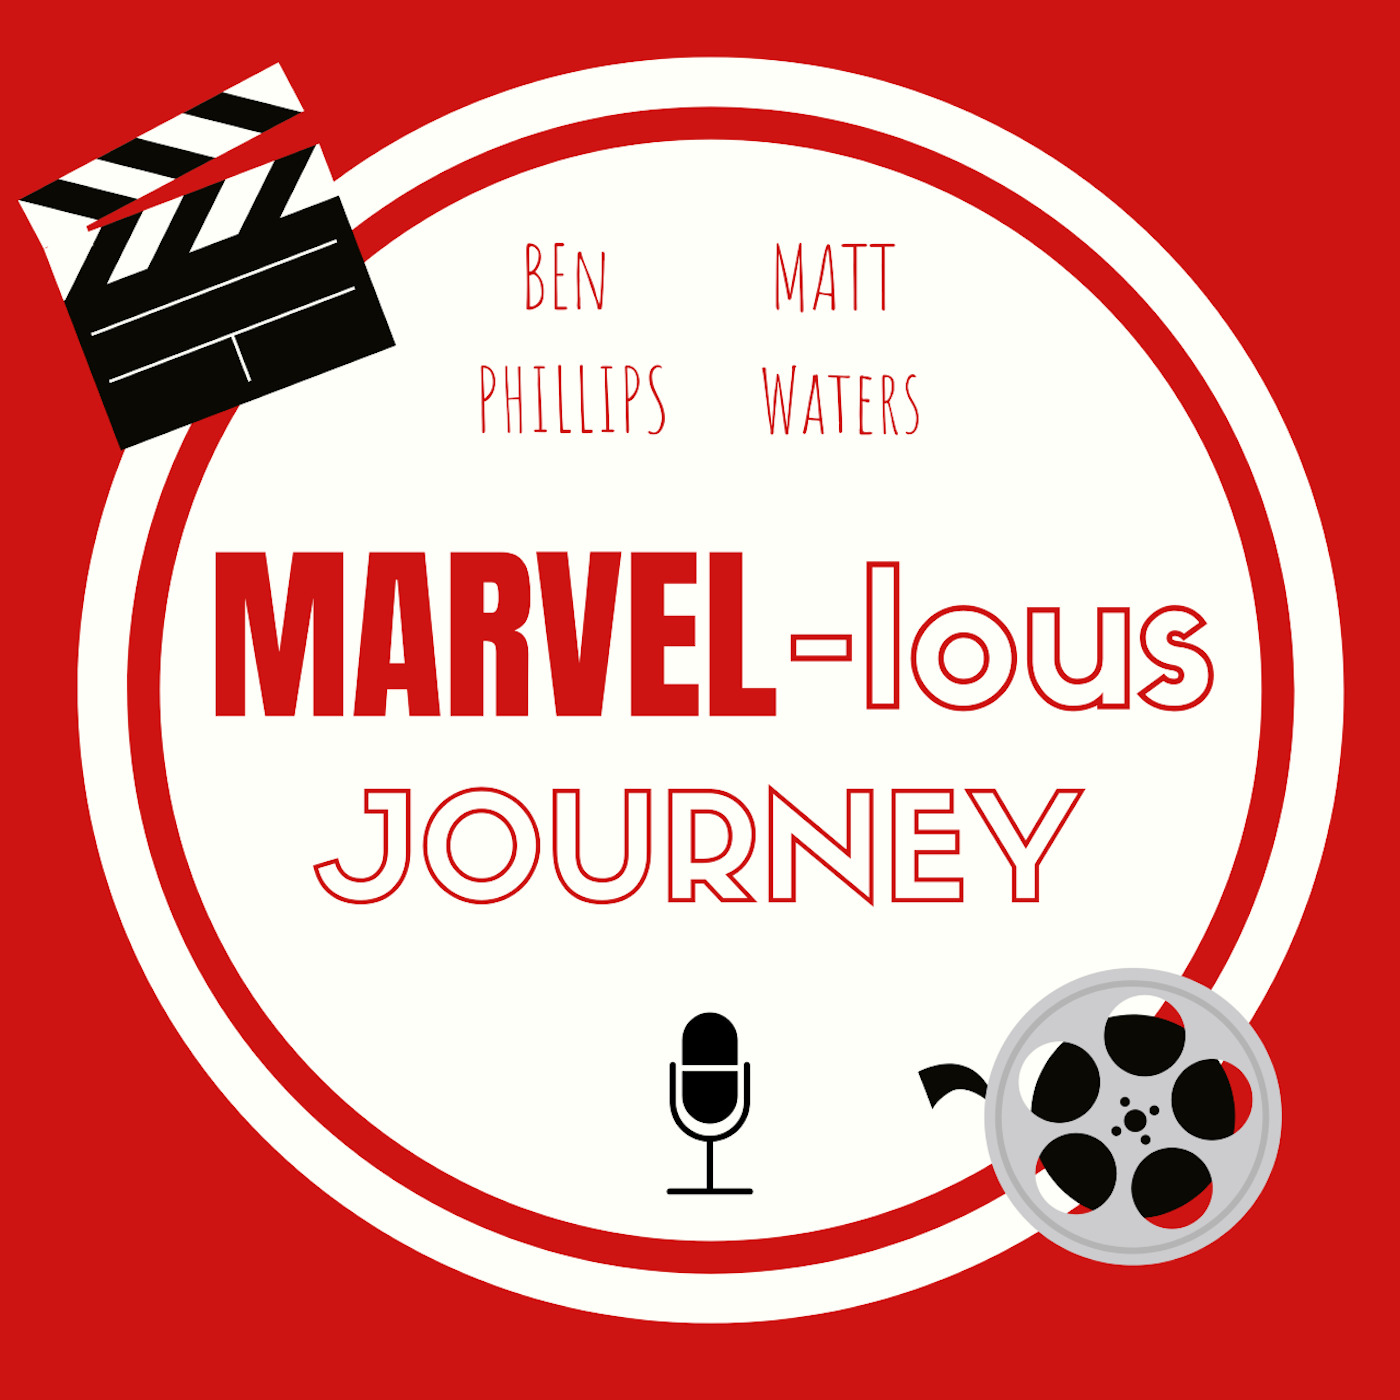 Artwork for podcast Ben & Matt's Marvellous Journey